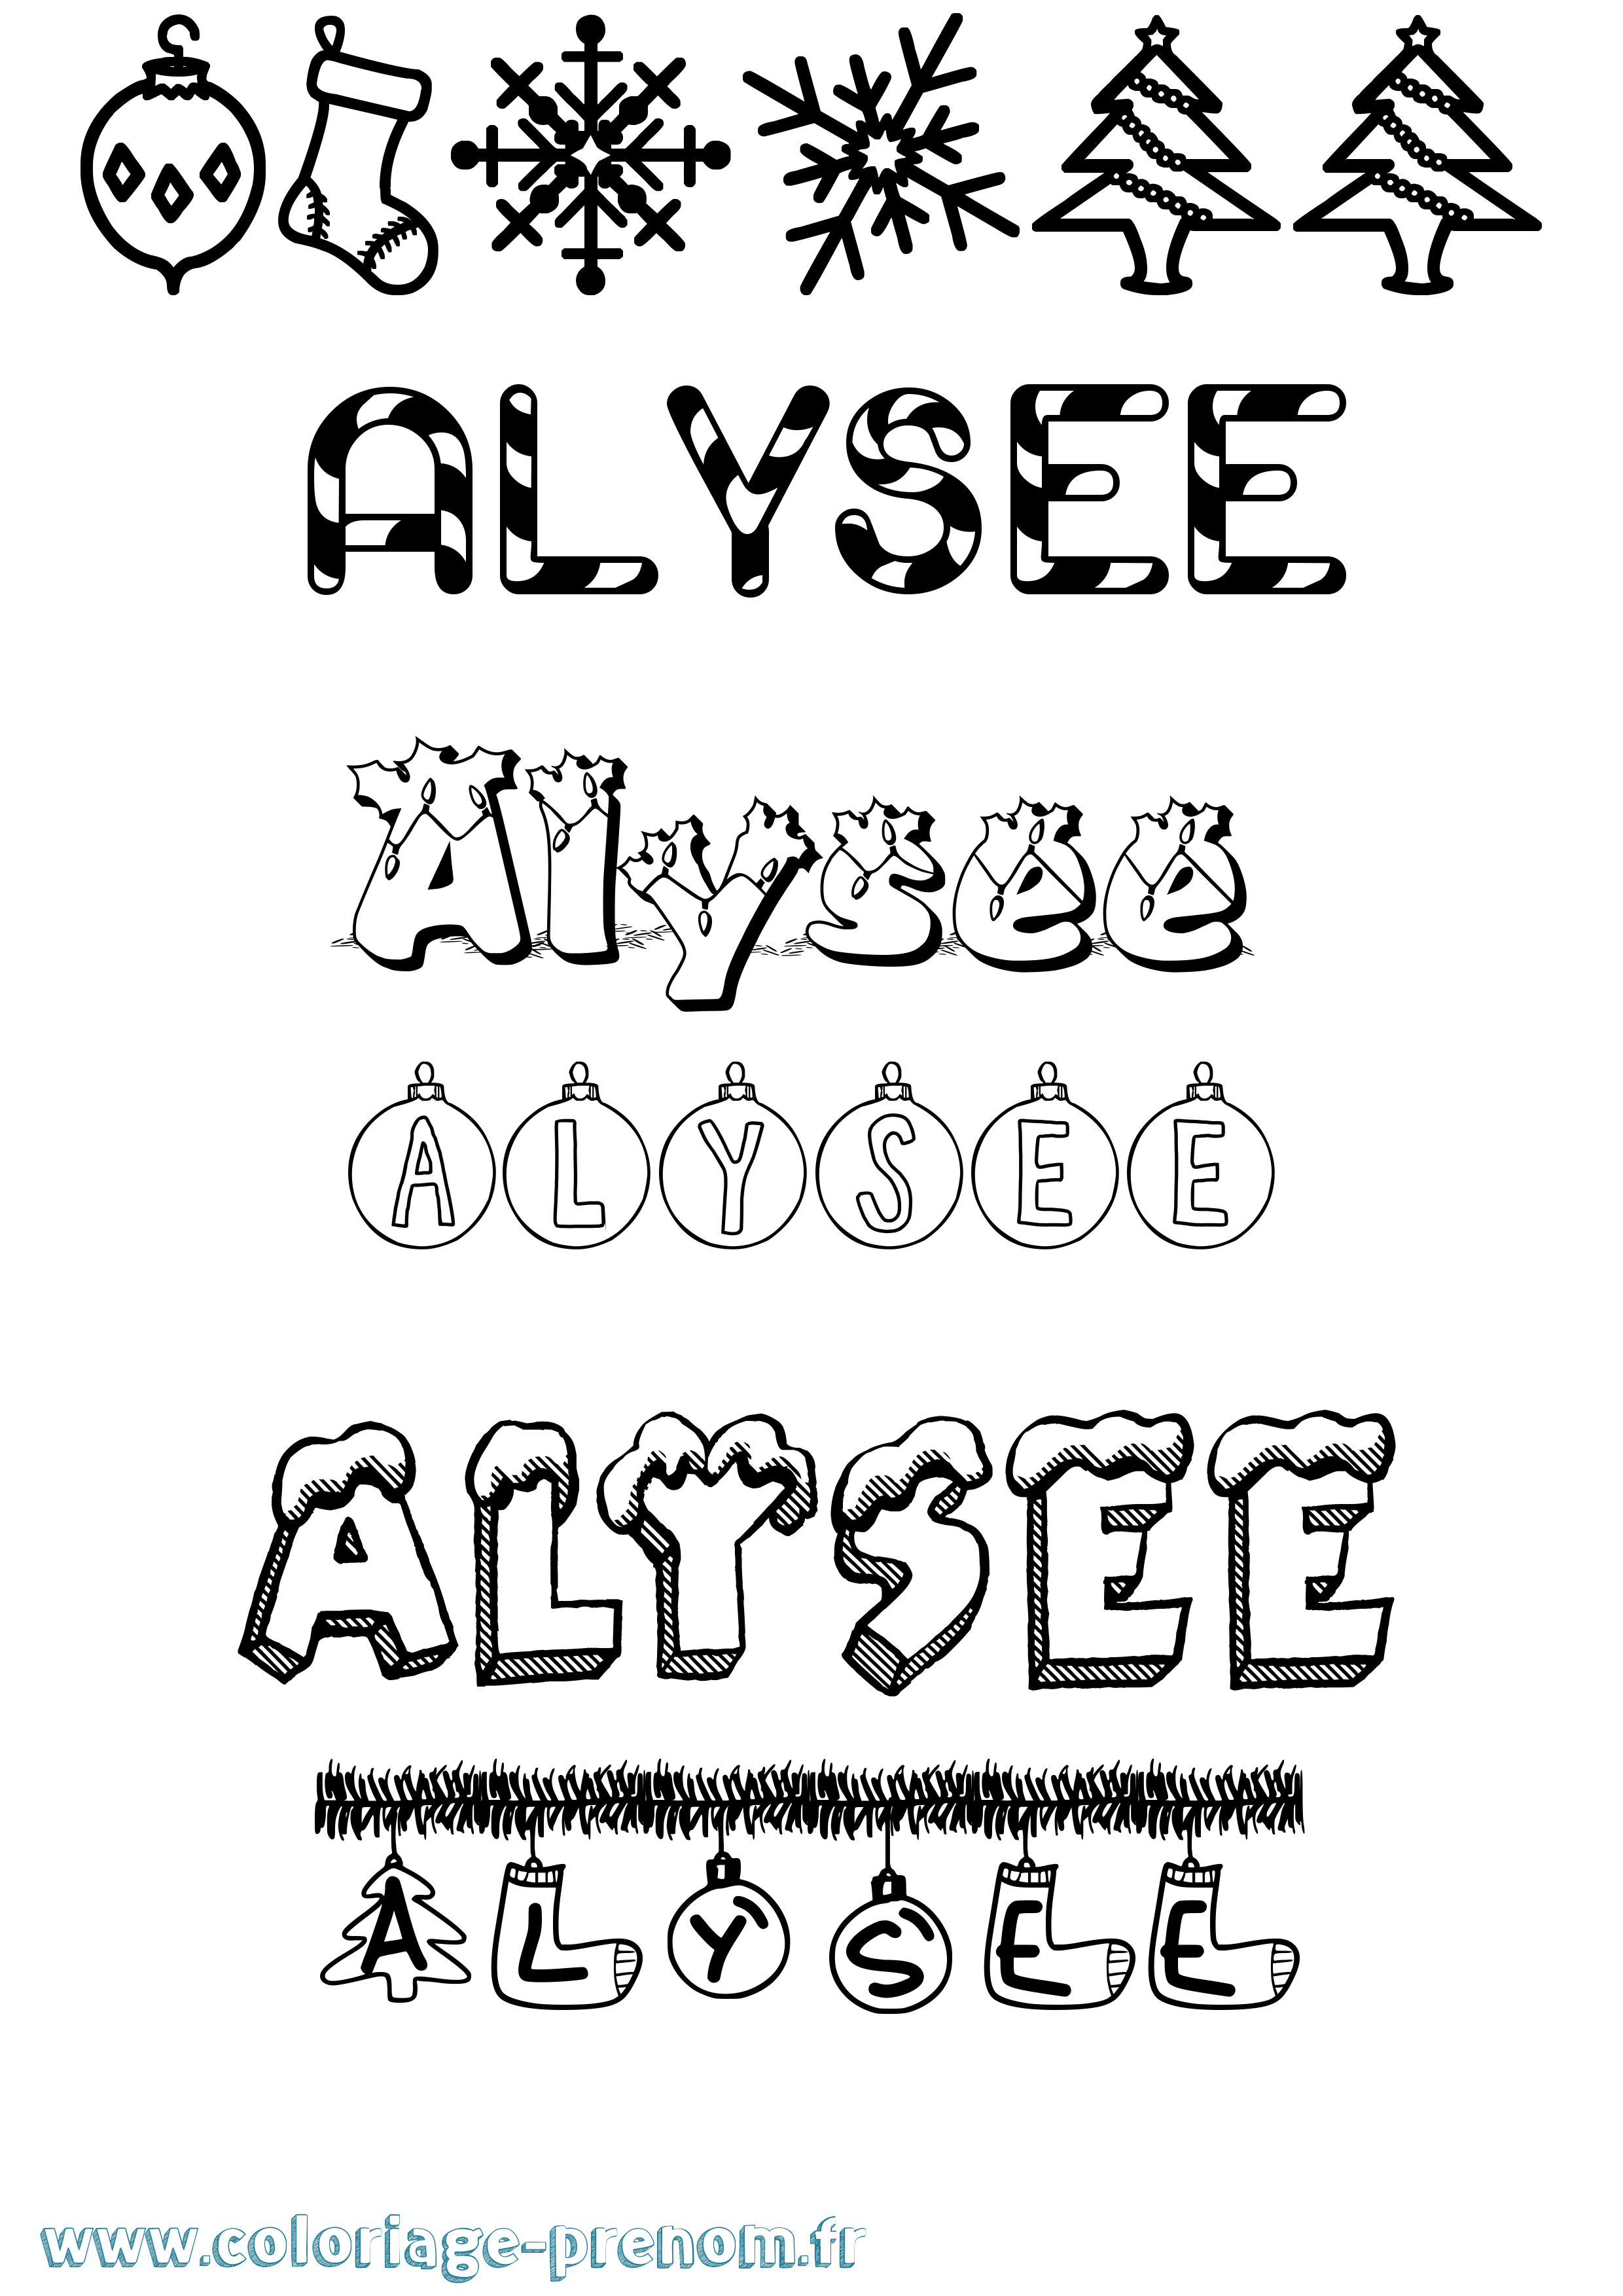 Coloriage prénom Alysee Noël